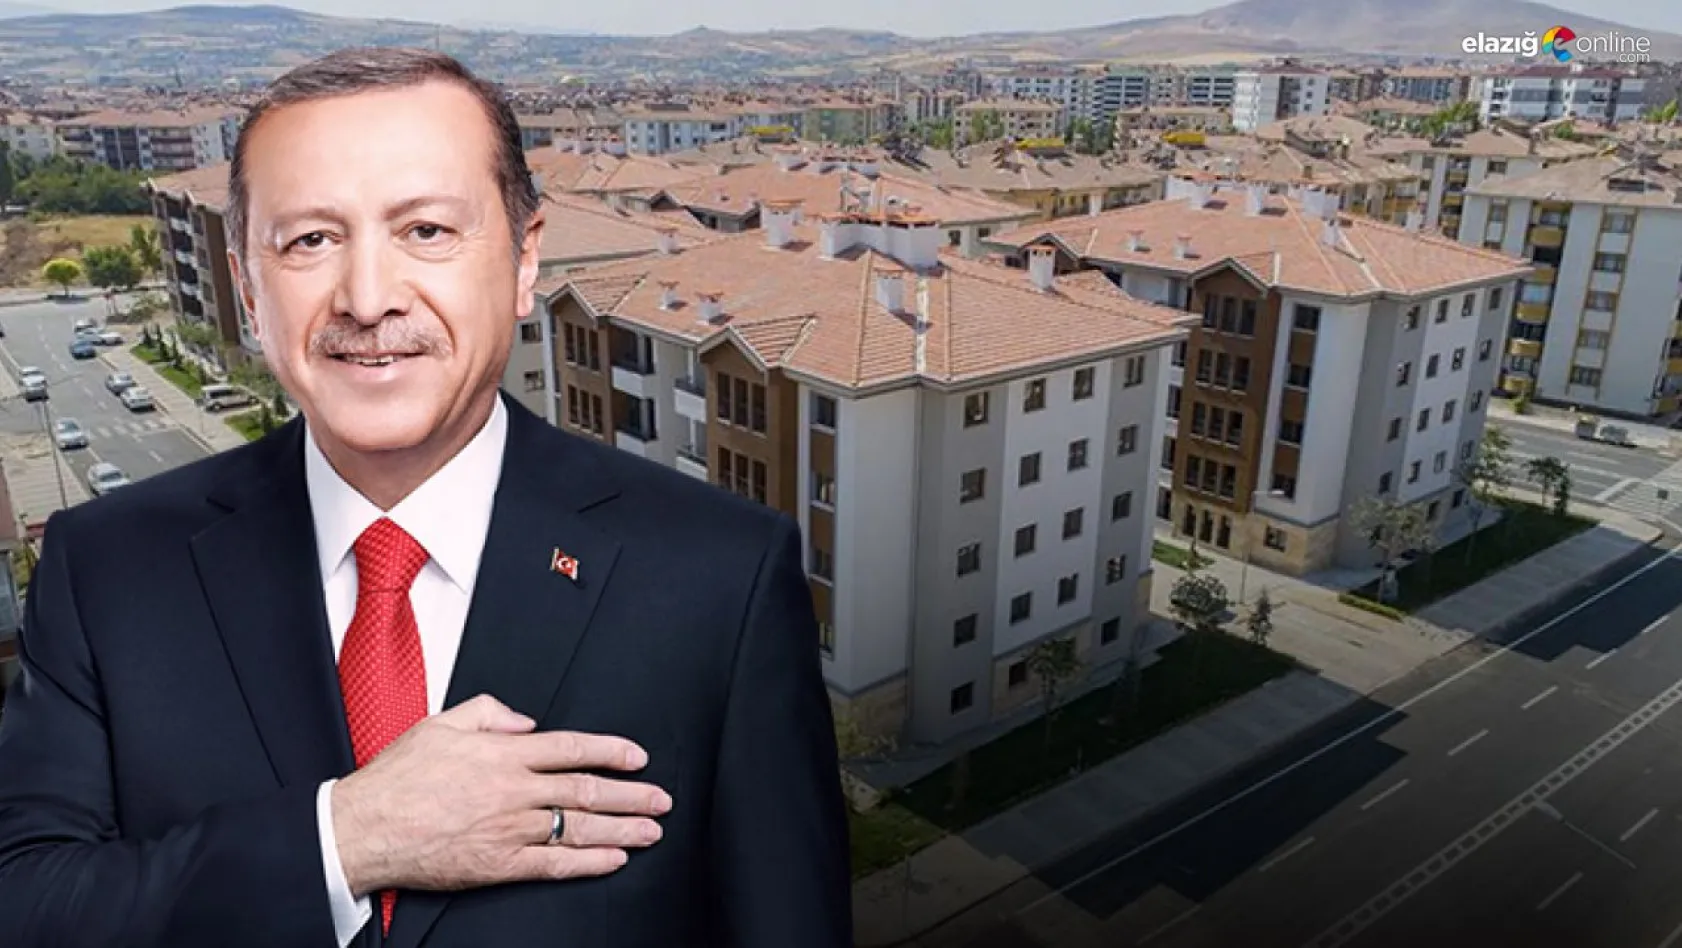 İşte Cumhurbaşkanı Erdoğan'ın müjdesini verdiği sosyal konut projesinin detayları